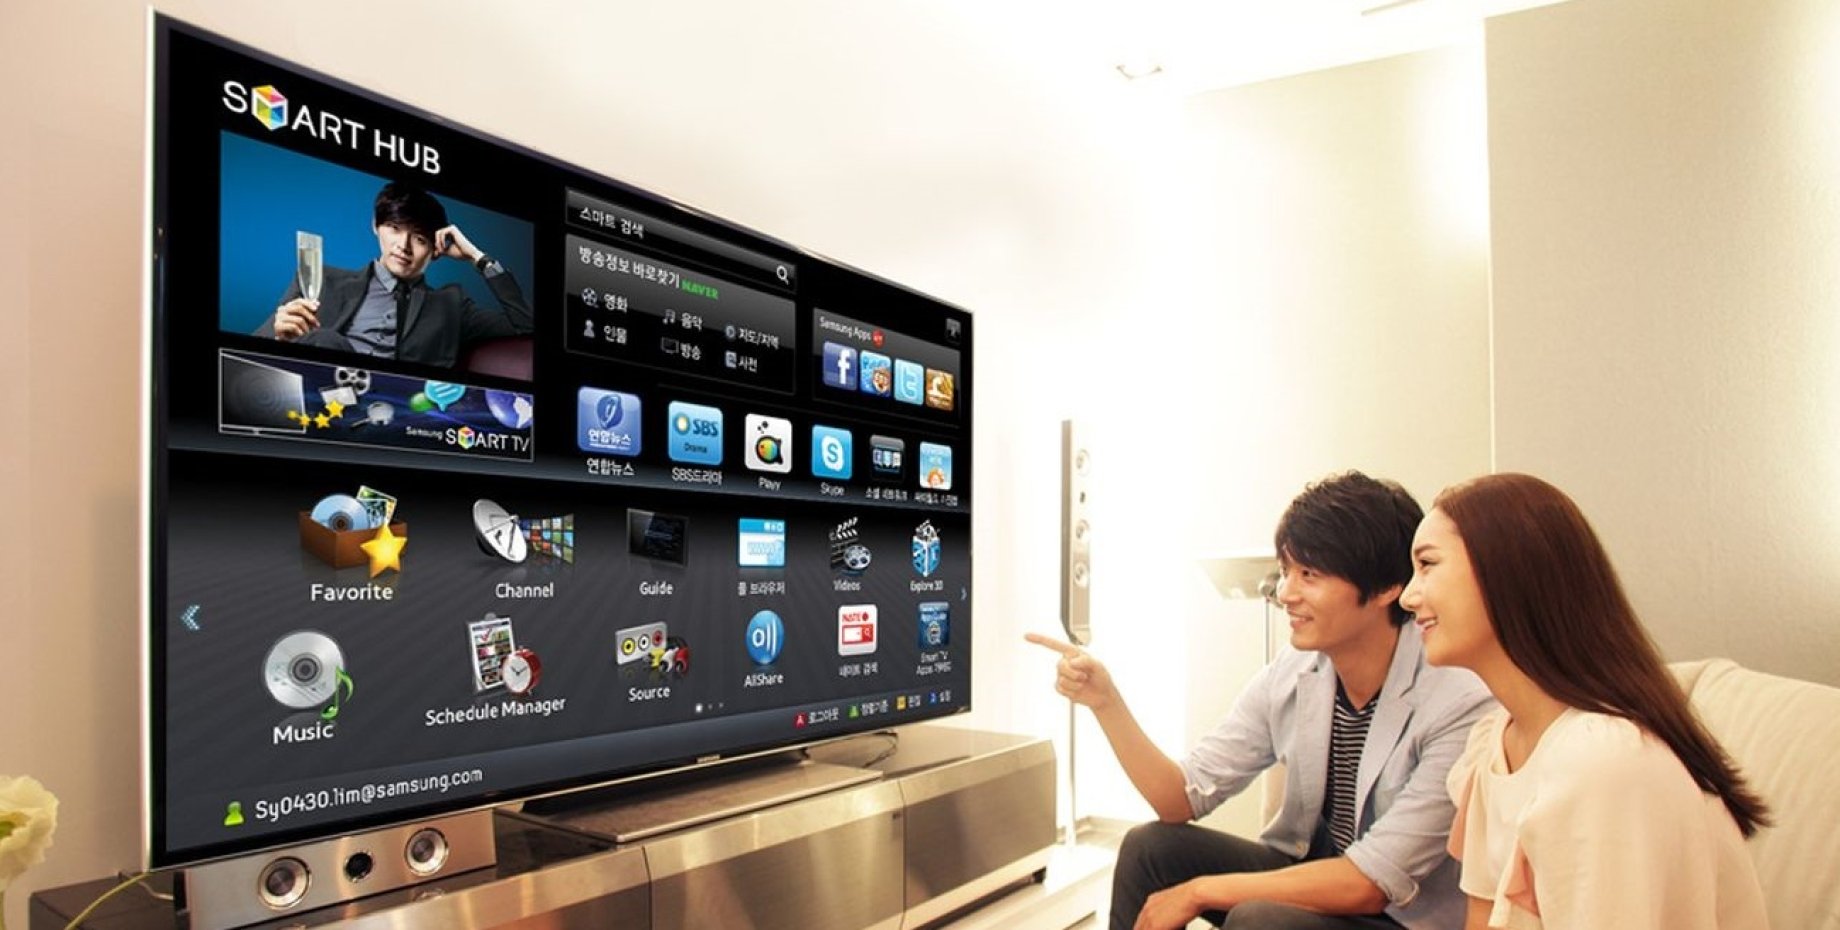 Проходящие через телевизор. Samsung LG Panasonic Smart TV. DLNA LG Smart TV. Смарт телевизор. Современные телевизоры с интернетом.